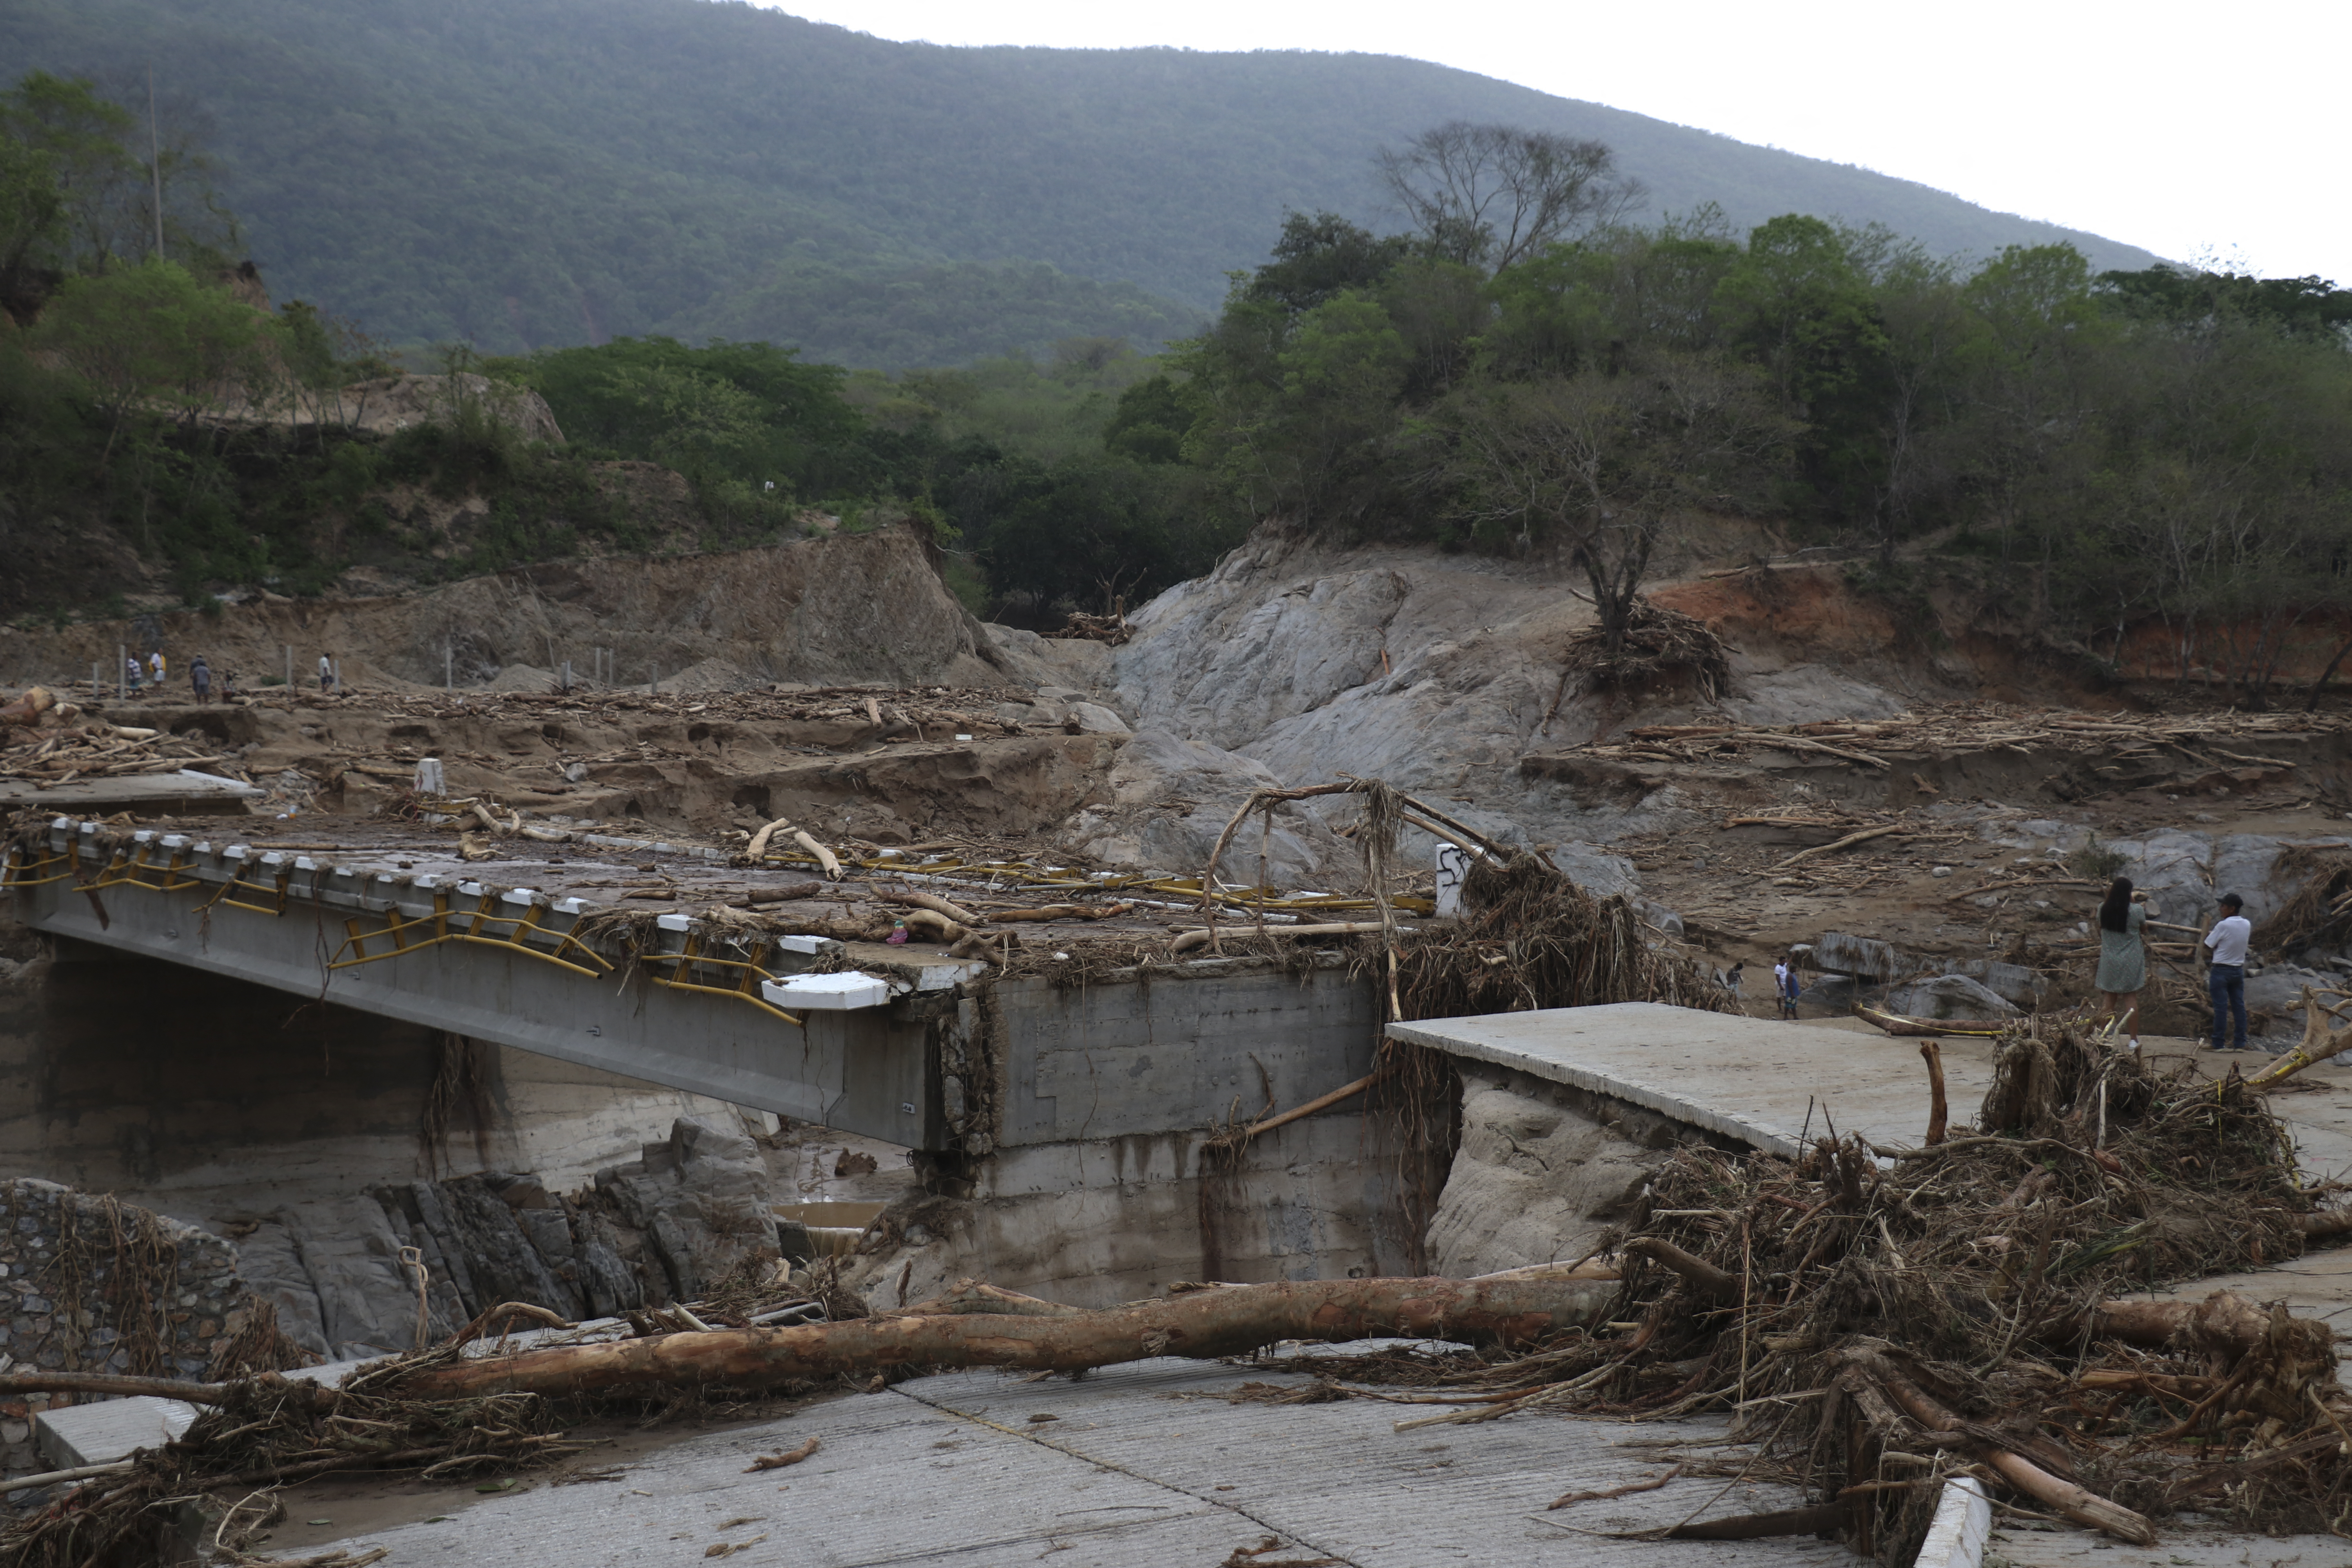 Segob emitió la Declaratoria de Emergencia y la Declaratoria de Desastre para 38 municipios de Oaxaca debido a al huracán Agatha (Photo by Gil OBED / AFP)